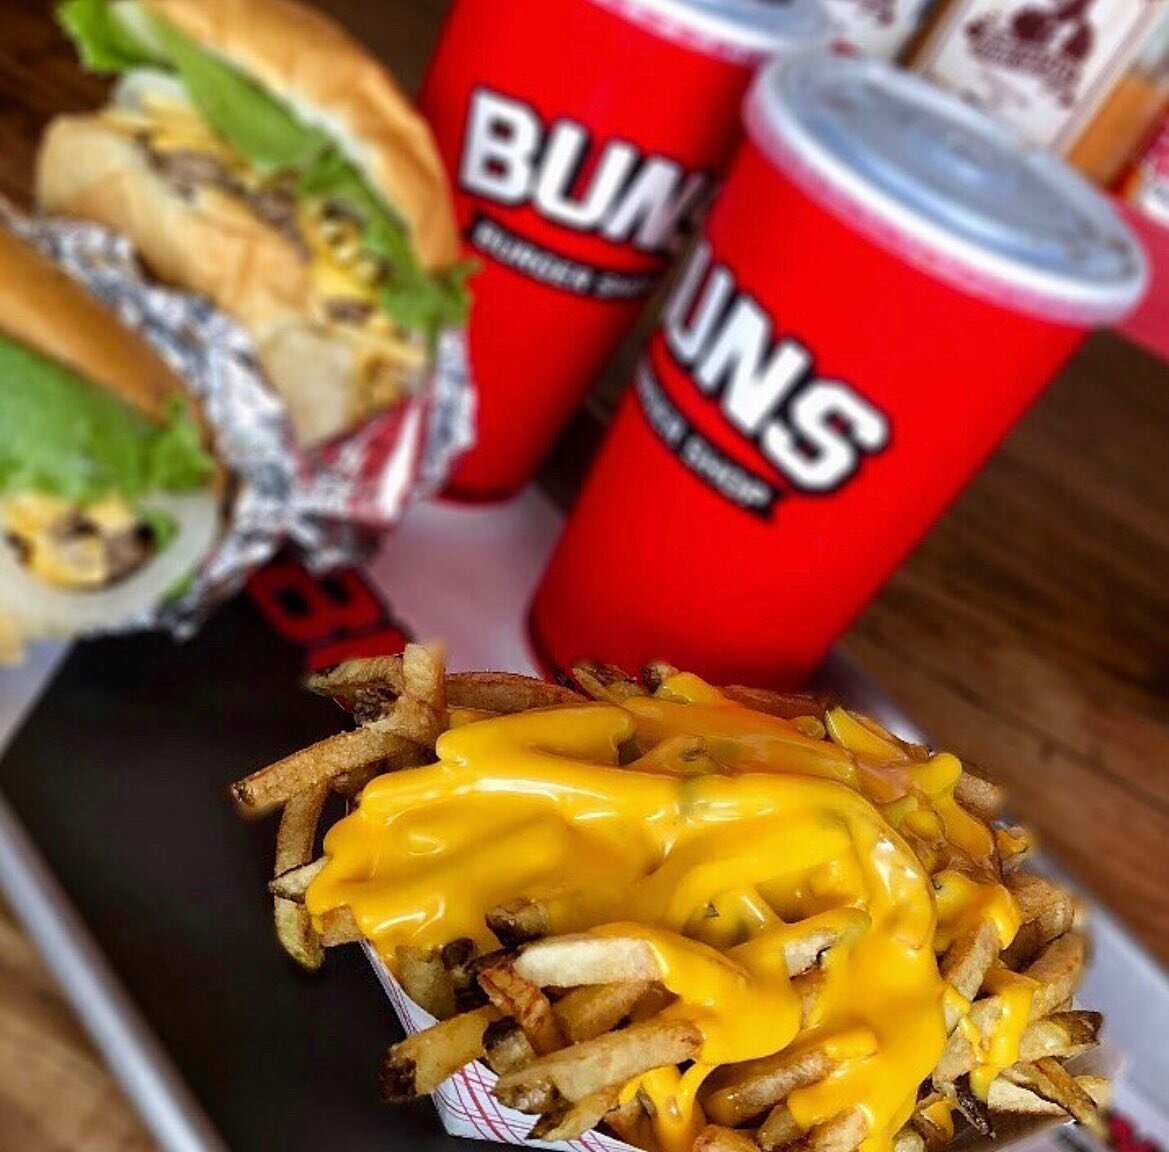 Buns and burger - Der absolute TOP-Favorit unter allen Produkten